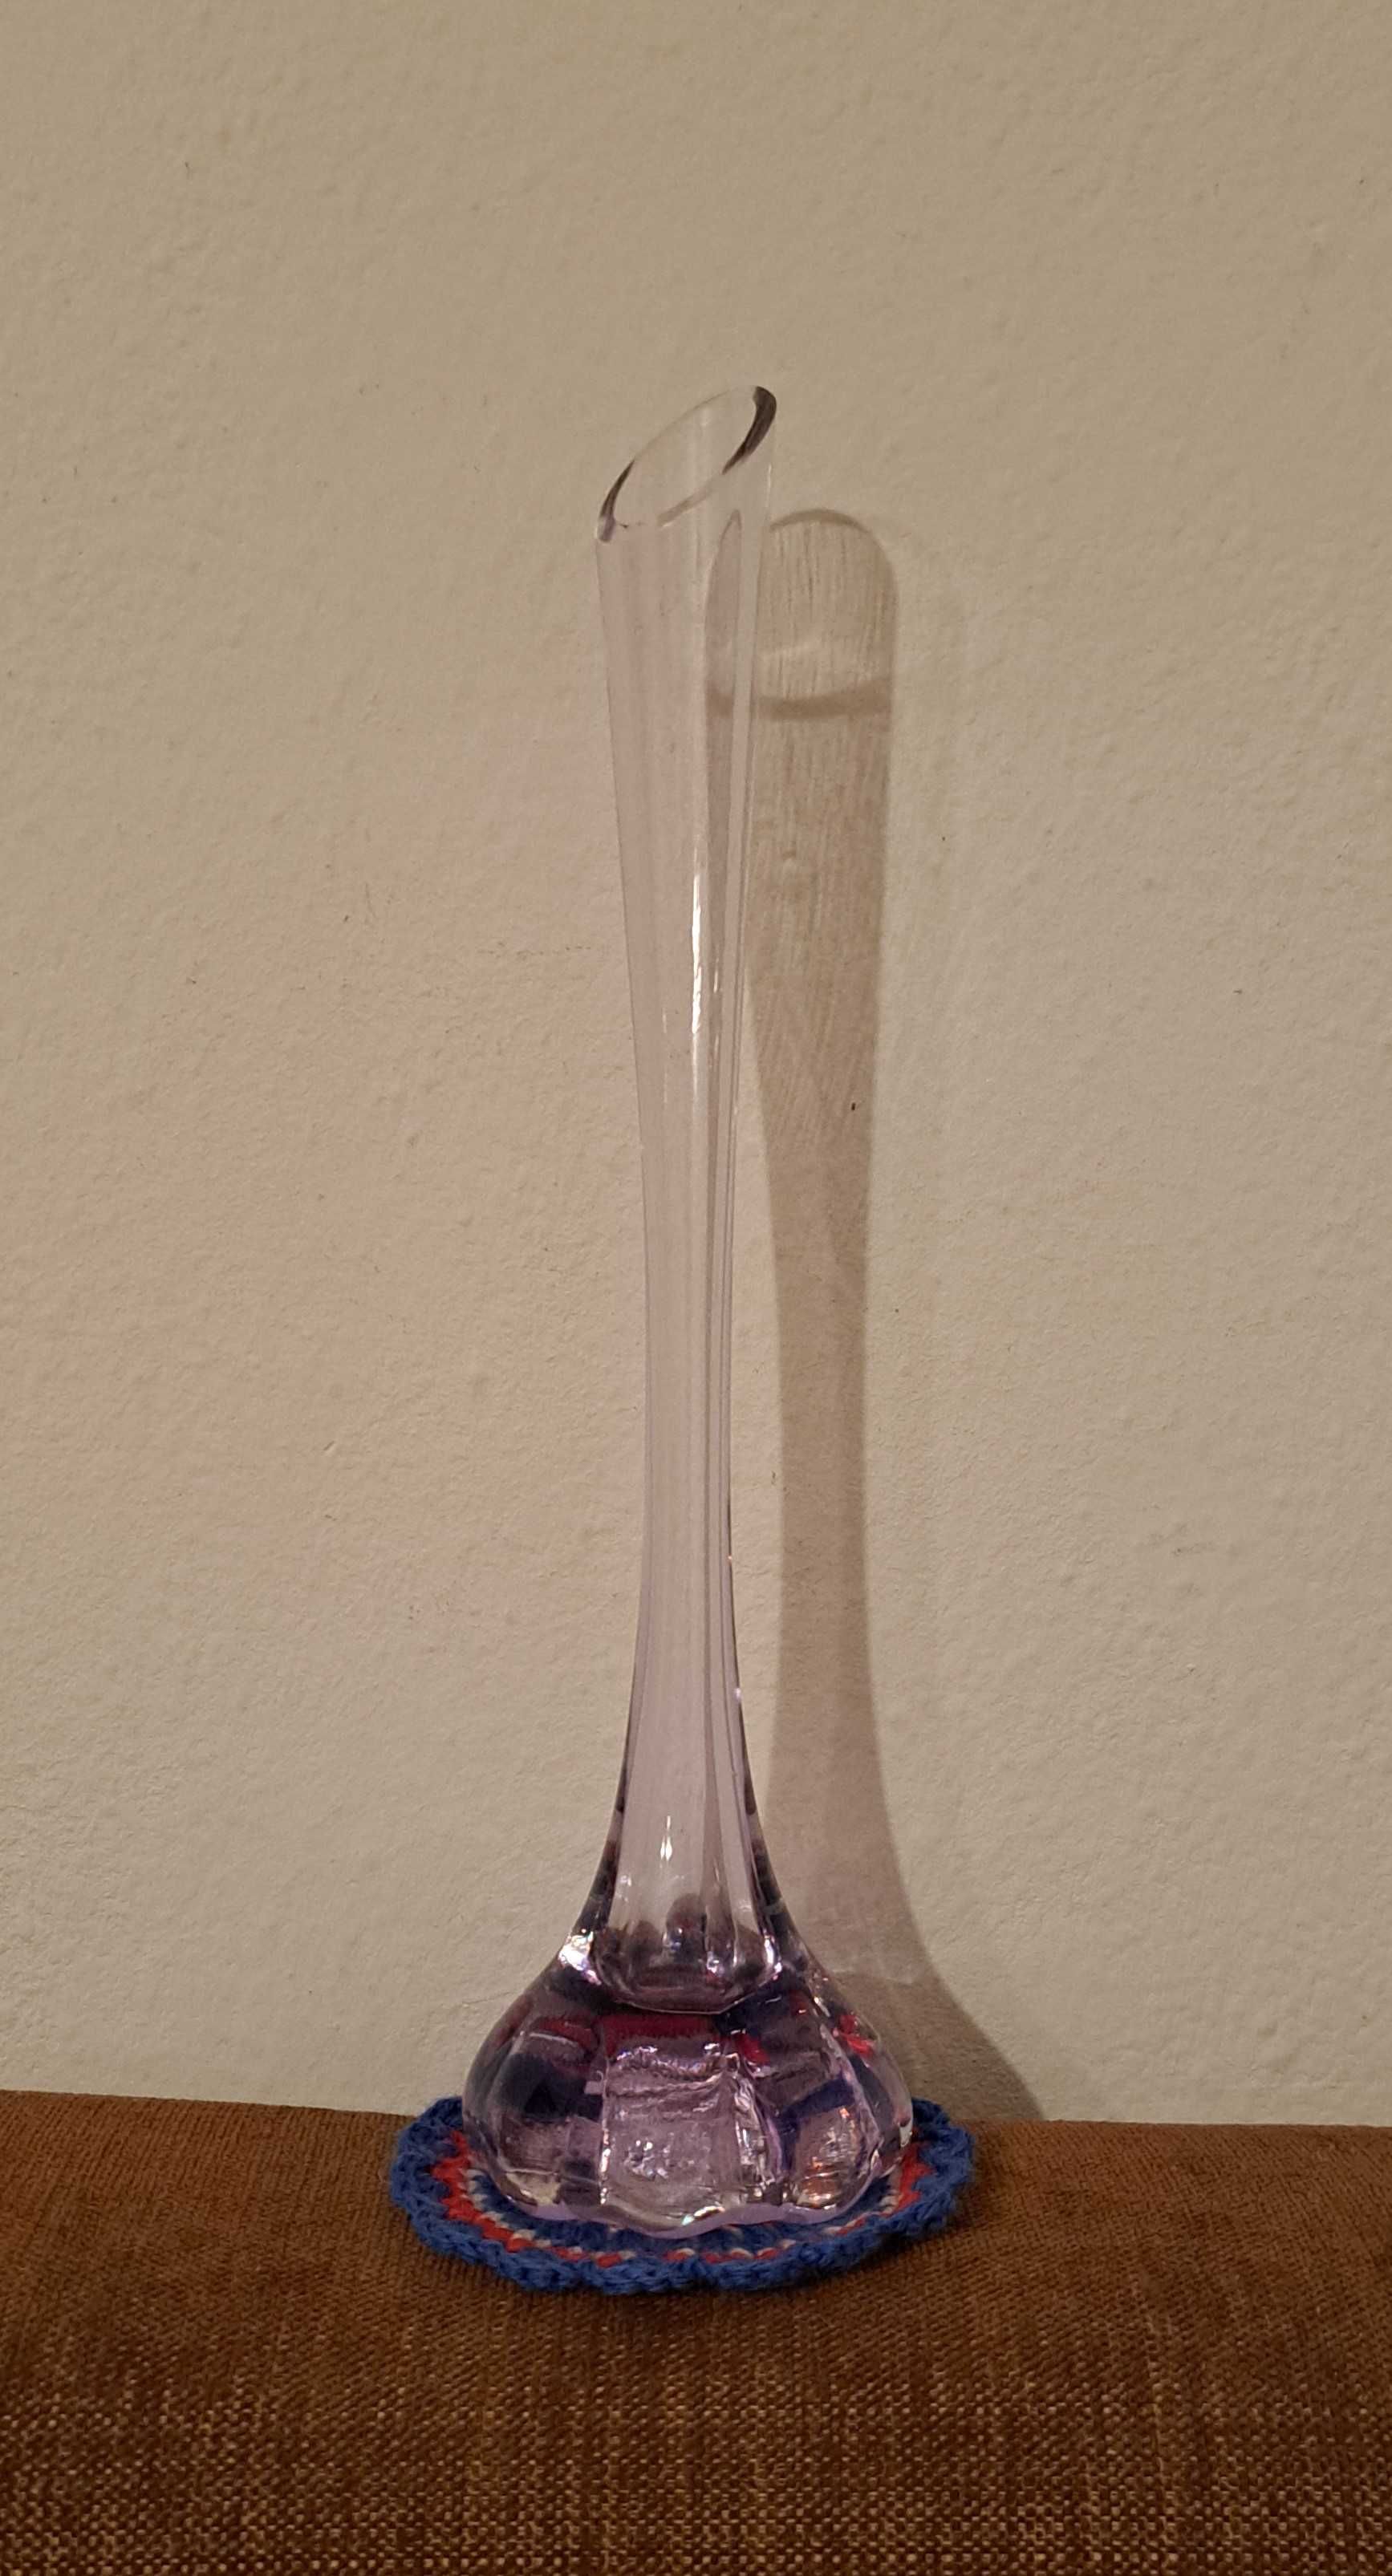 fioletowy szklany wazonik - tzw słonia noga